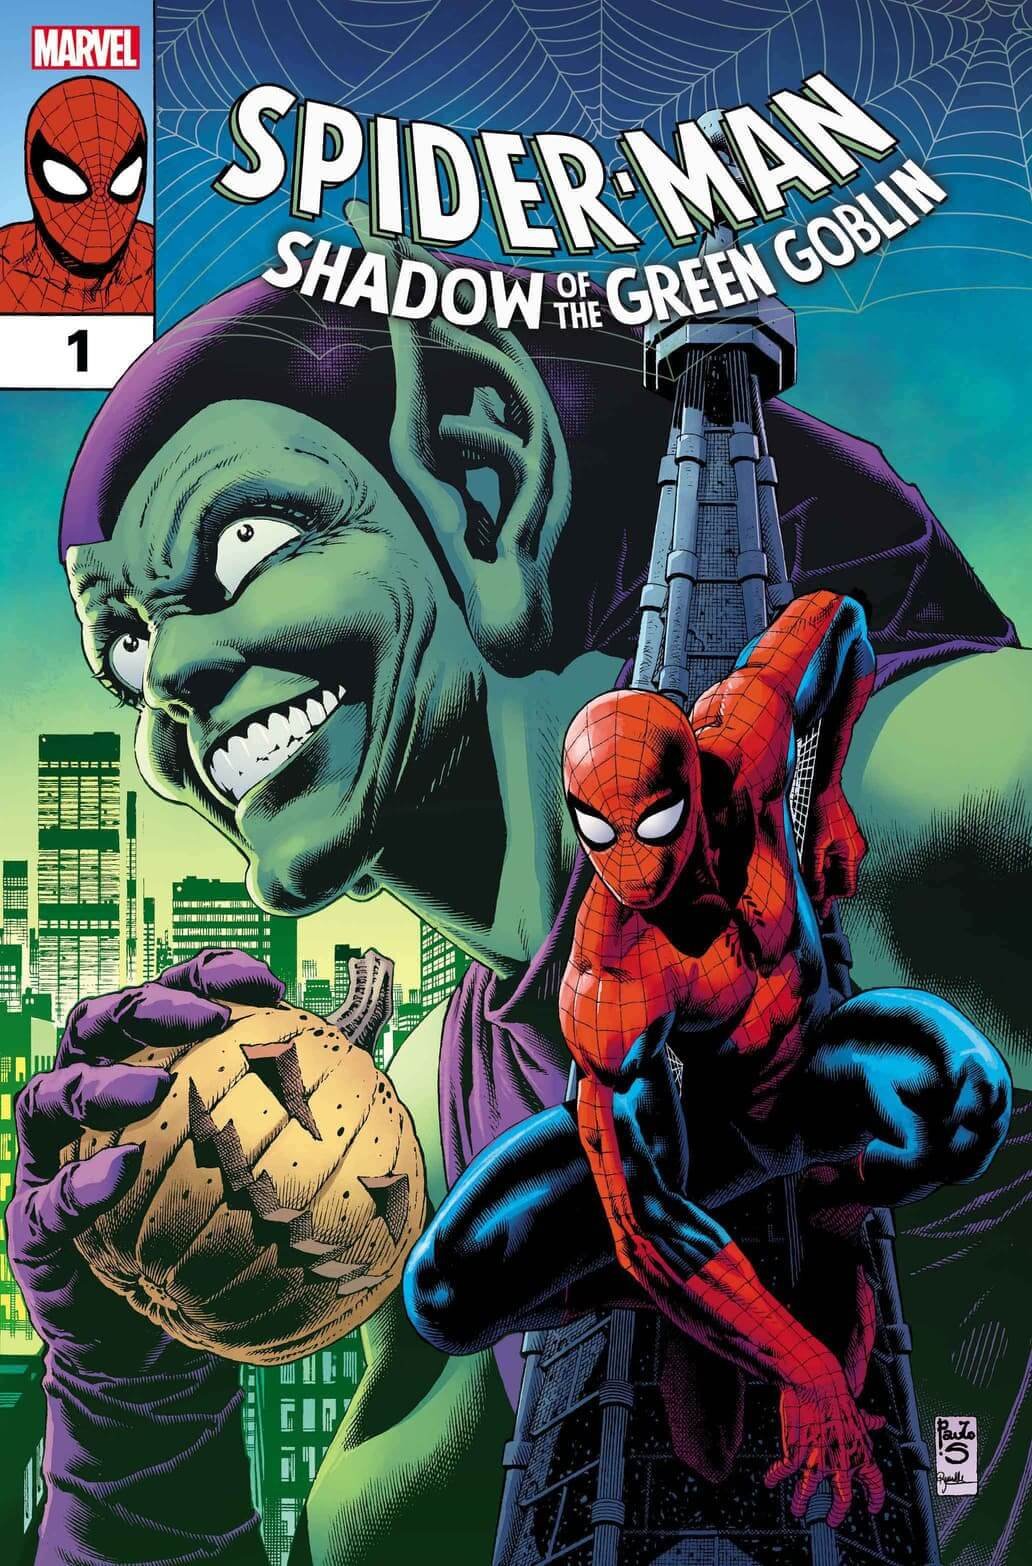 Couverture de Spider-Man : Shadow of the Green Goblin 1 par Paulo Siqueira, la nouvelle mini-série de DeMatteis.